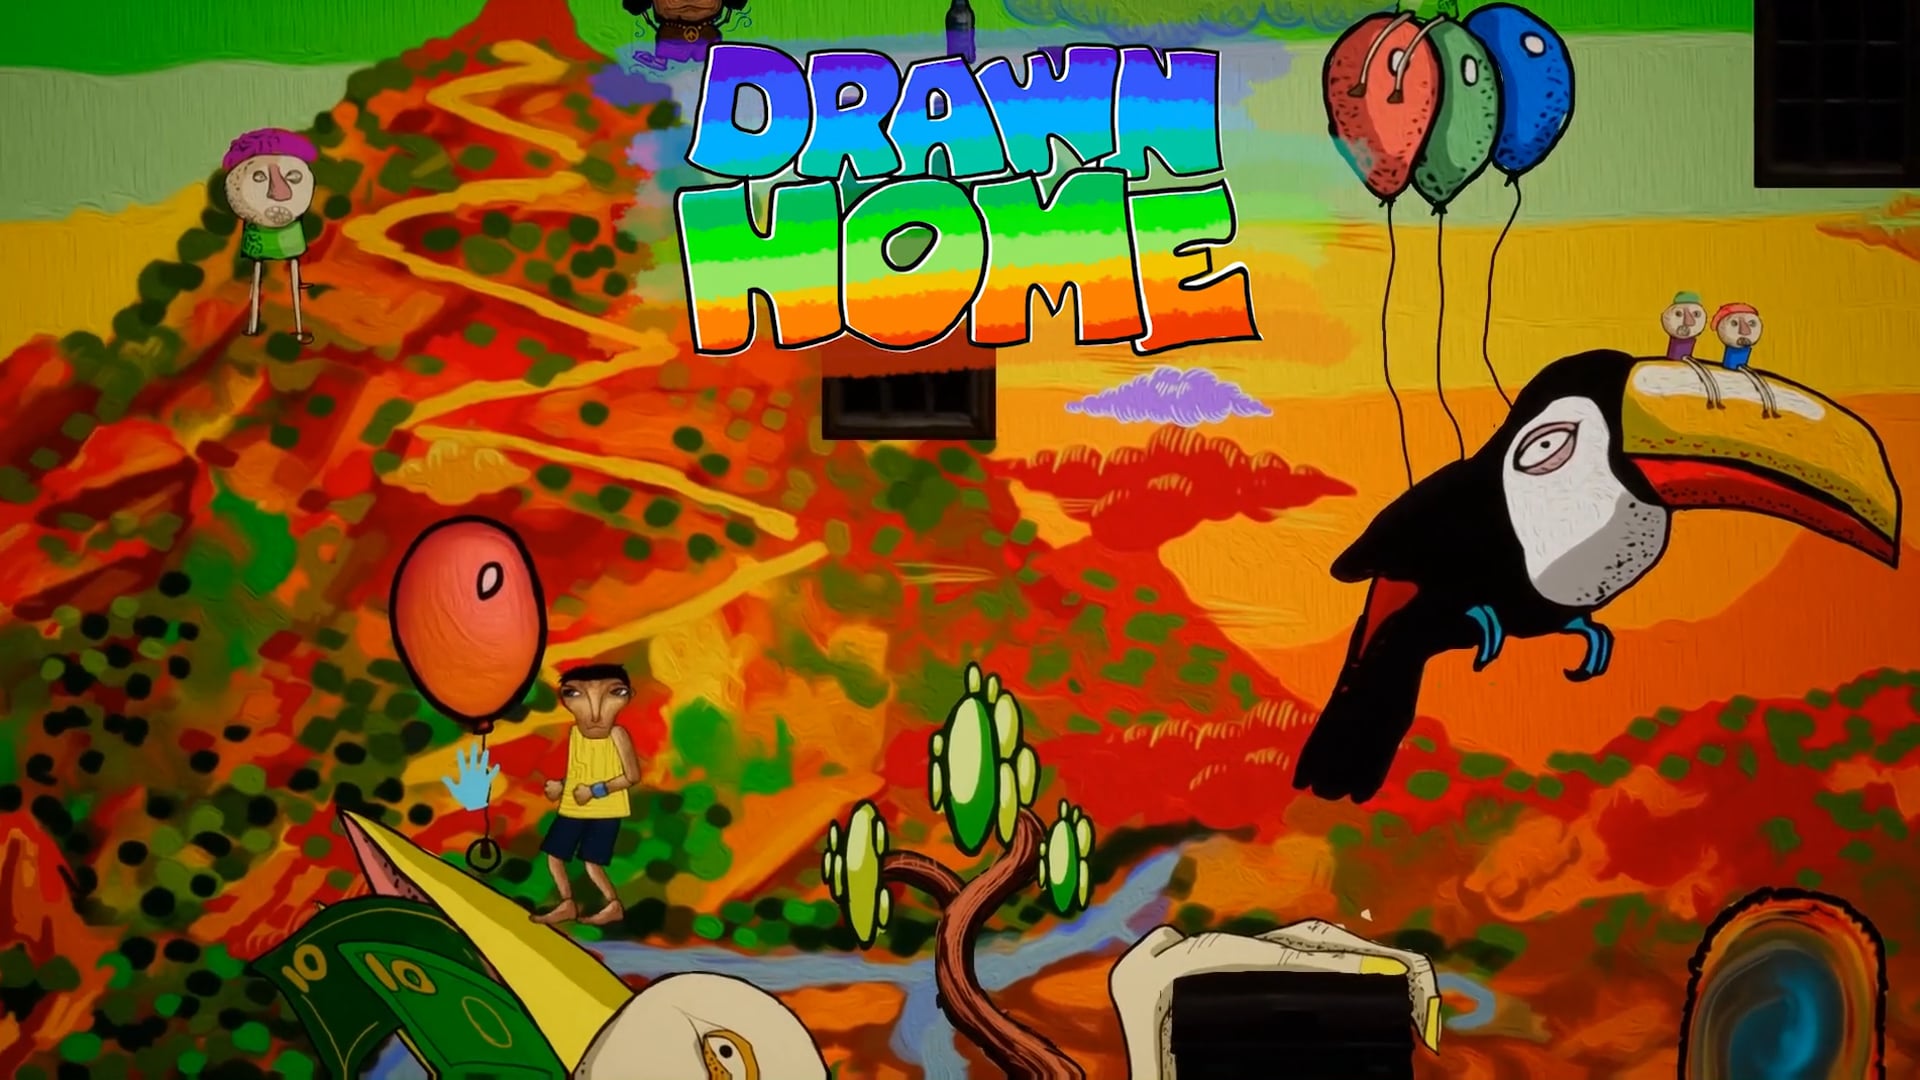 Drawn Home Trailer